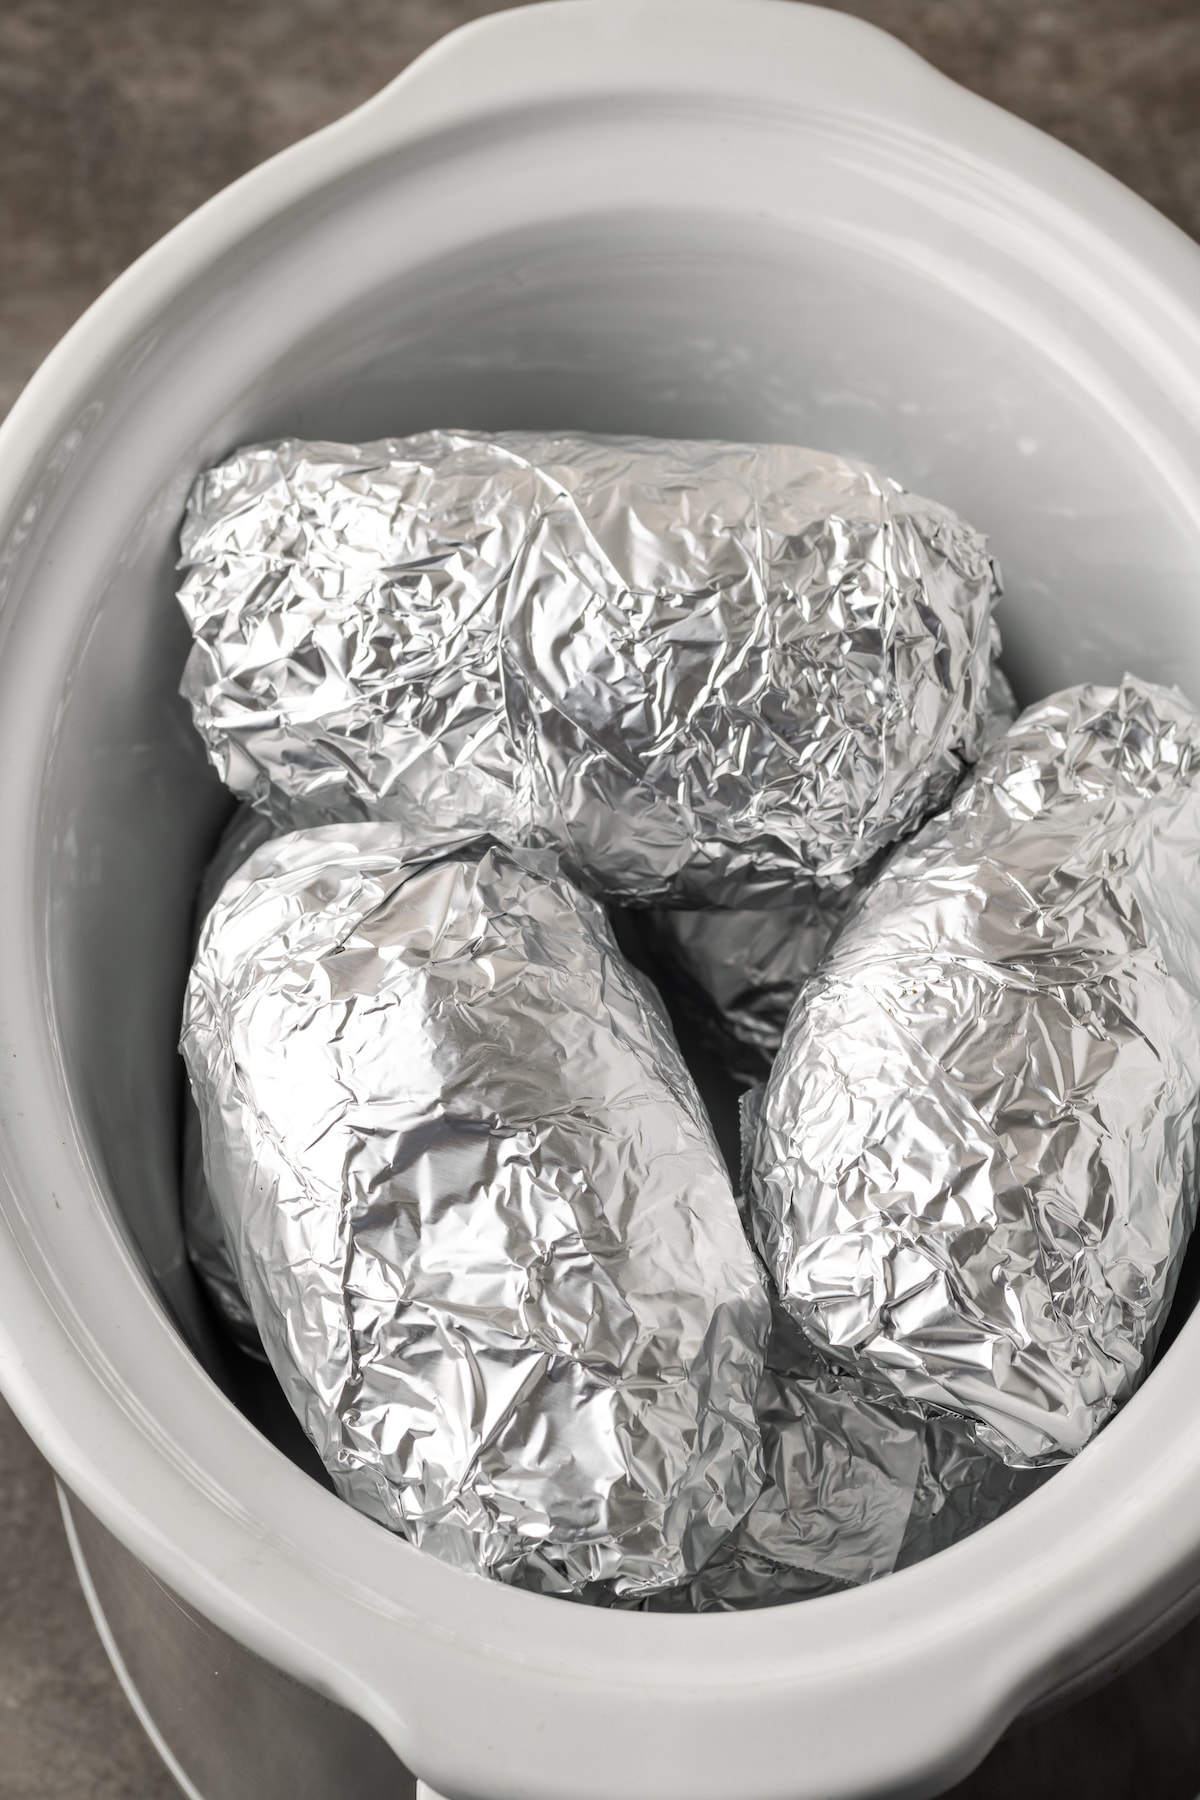 Patatas envueltas en papel aluminio en una olla de barro.